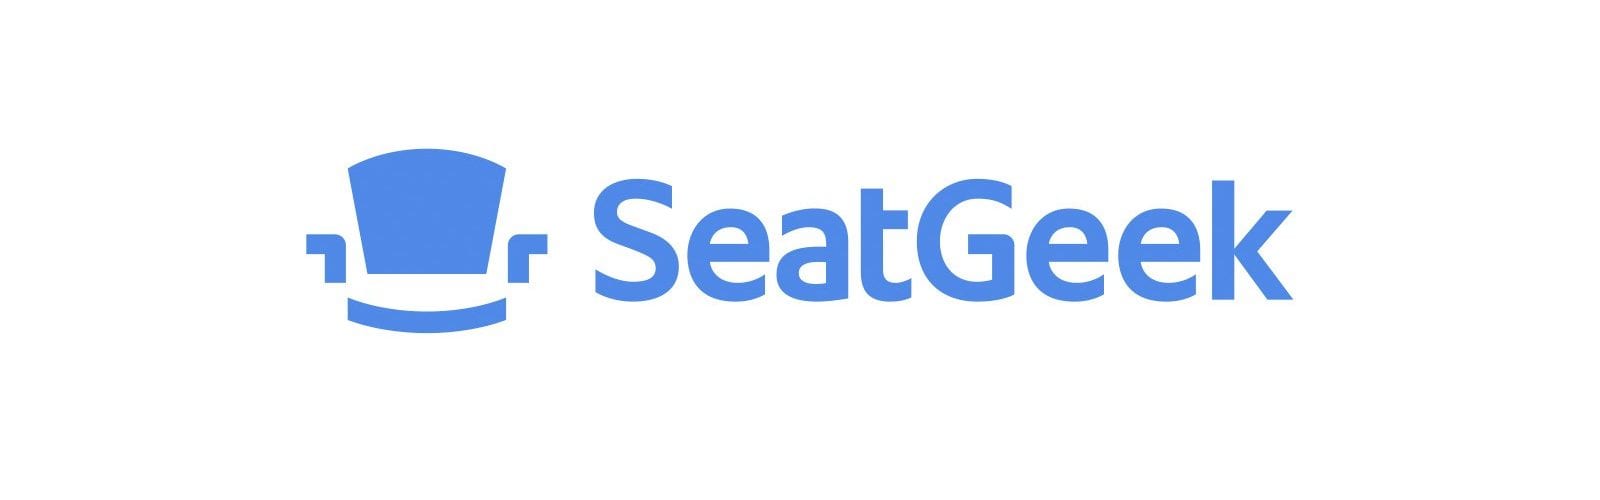 seatgeek logo